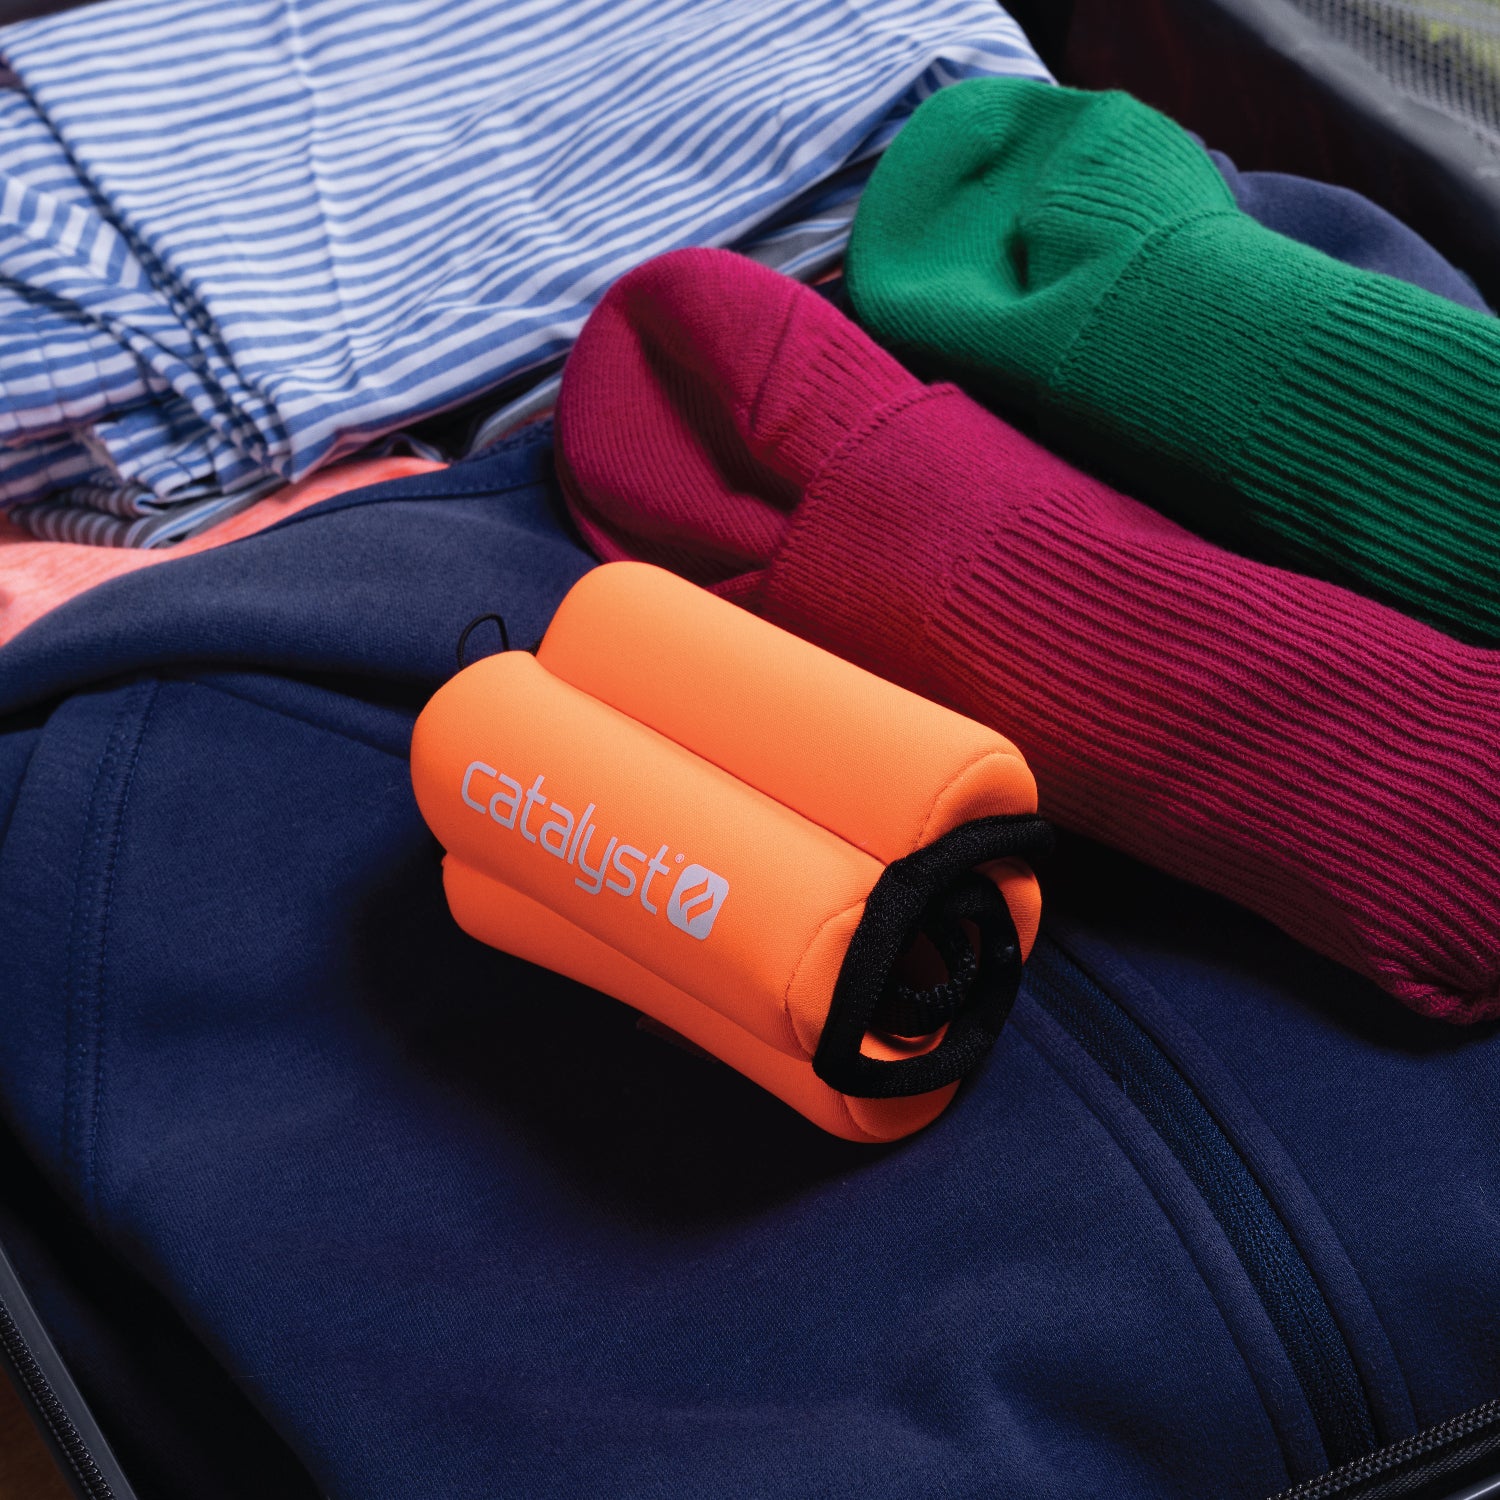 Catalyst orange floating wrist lanyard showing next to clothings inside luggage